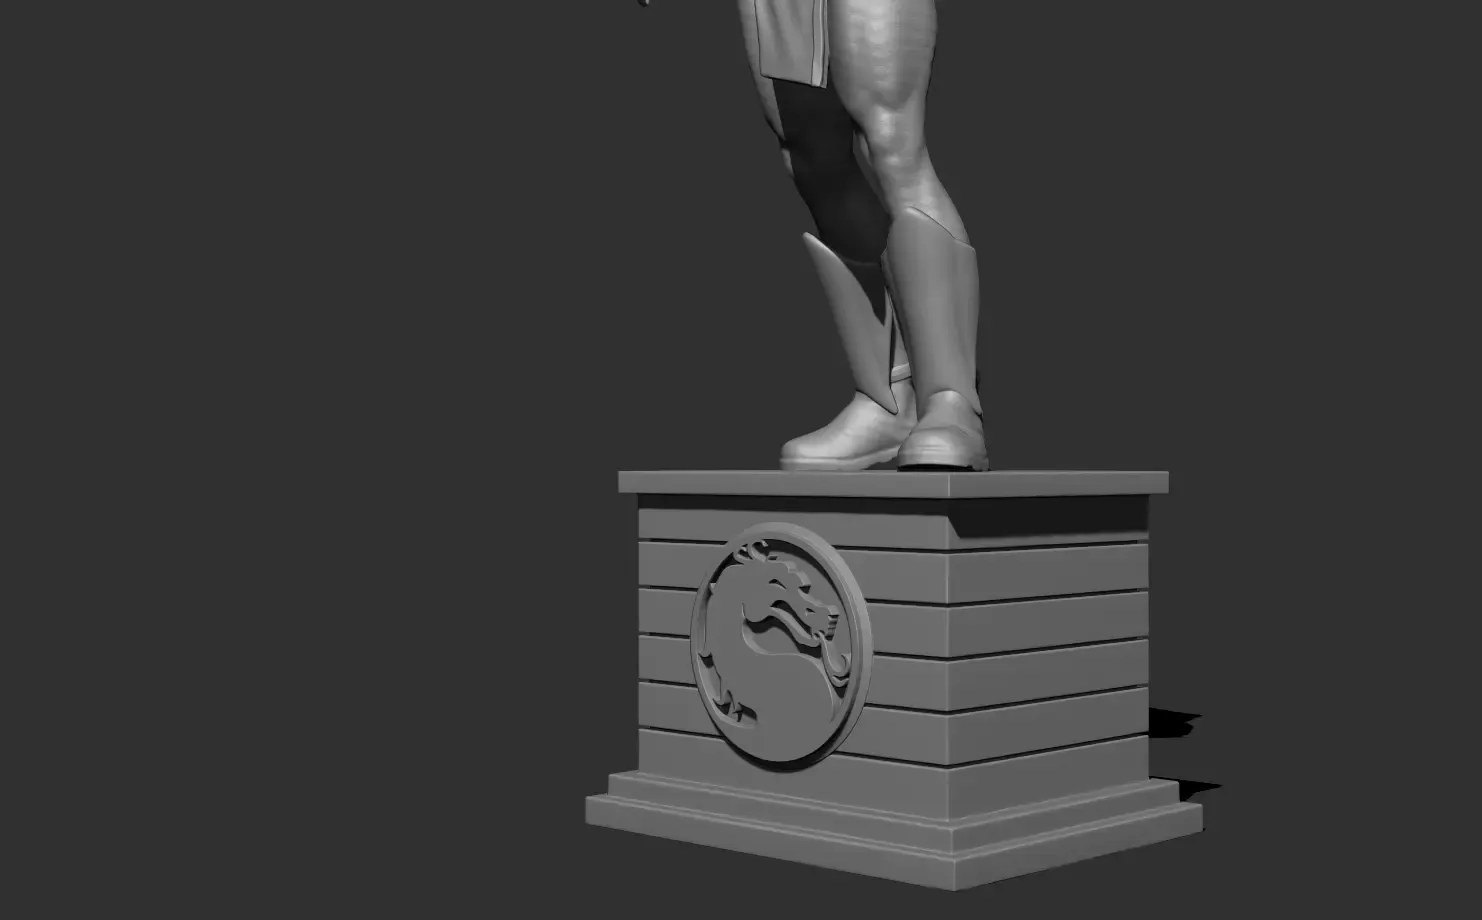 Subzero - Mortal kombat 3D print model